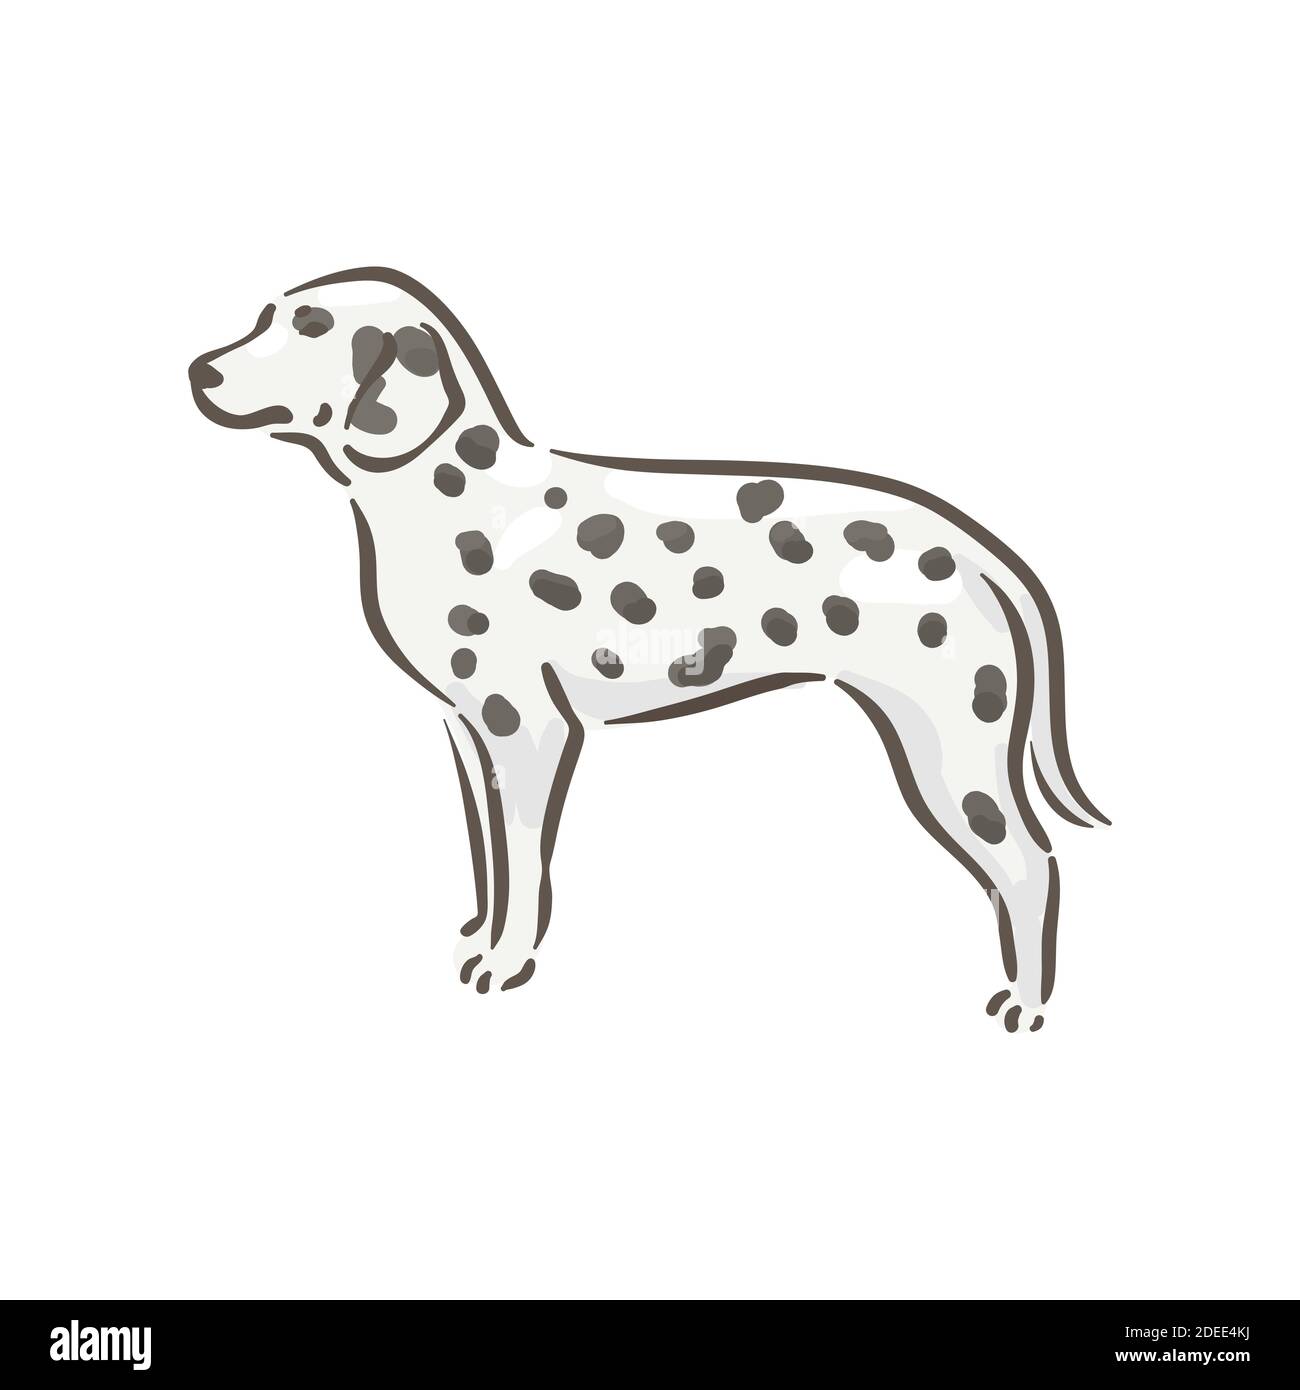 Niedlichen Hund dalmatiner Rasse Stammbaum Vektor Illustration Stock Vektor